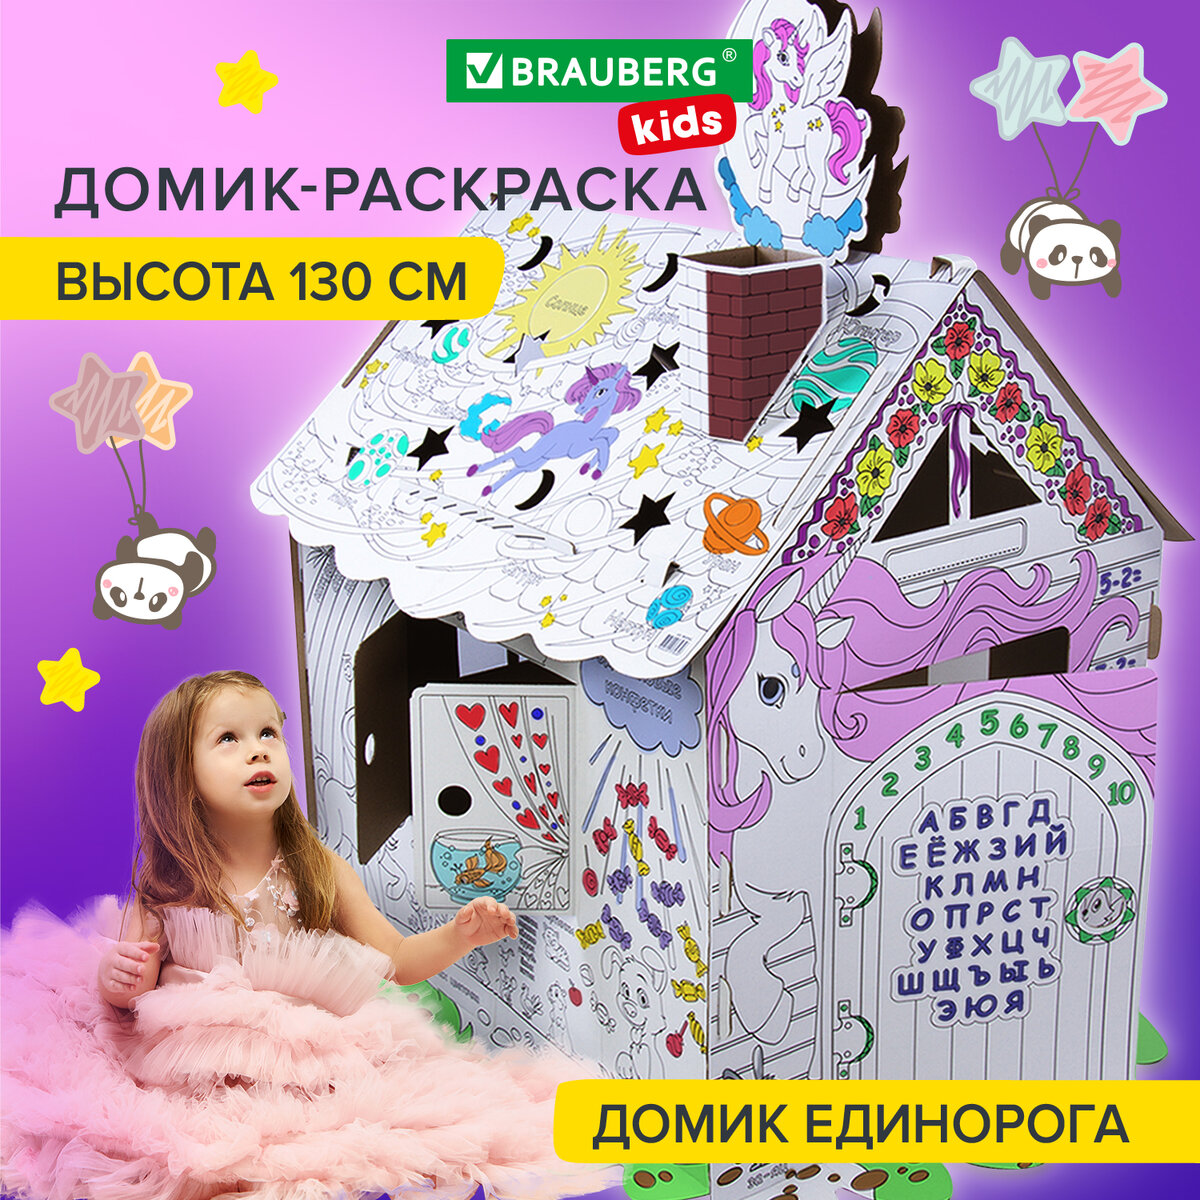 Домик-раскраска Brauberg KIDS Для маленькой принцессы, высота 130 см, 473325 домик раскраска сказочные принцессы